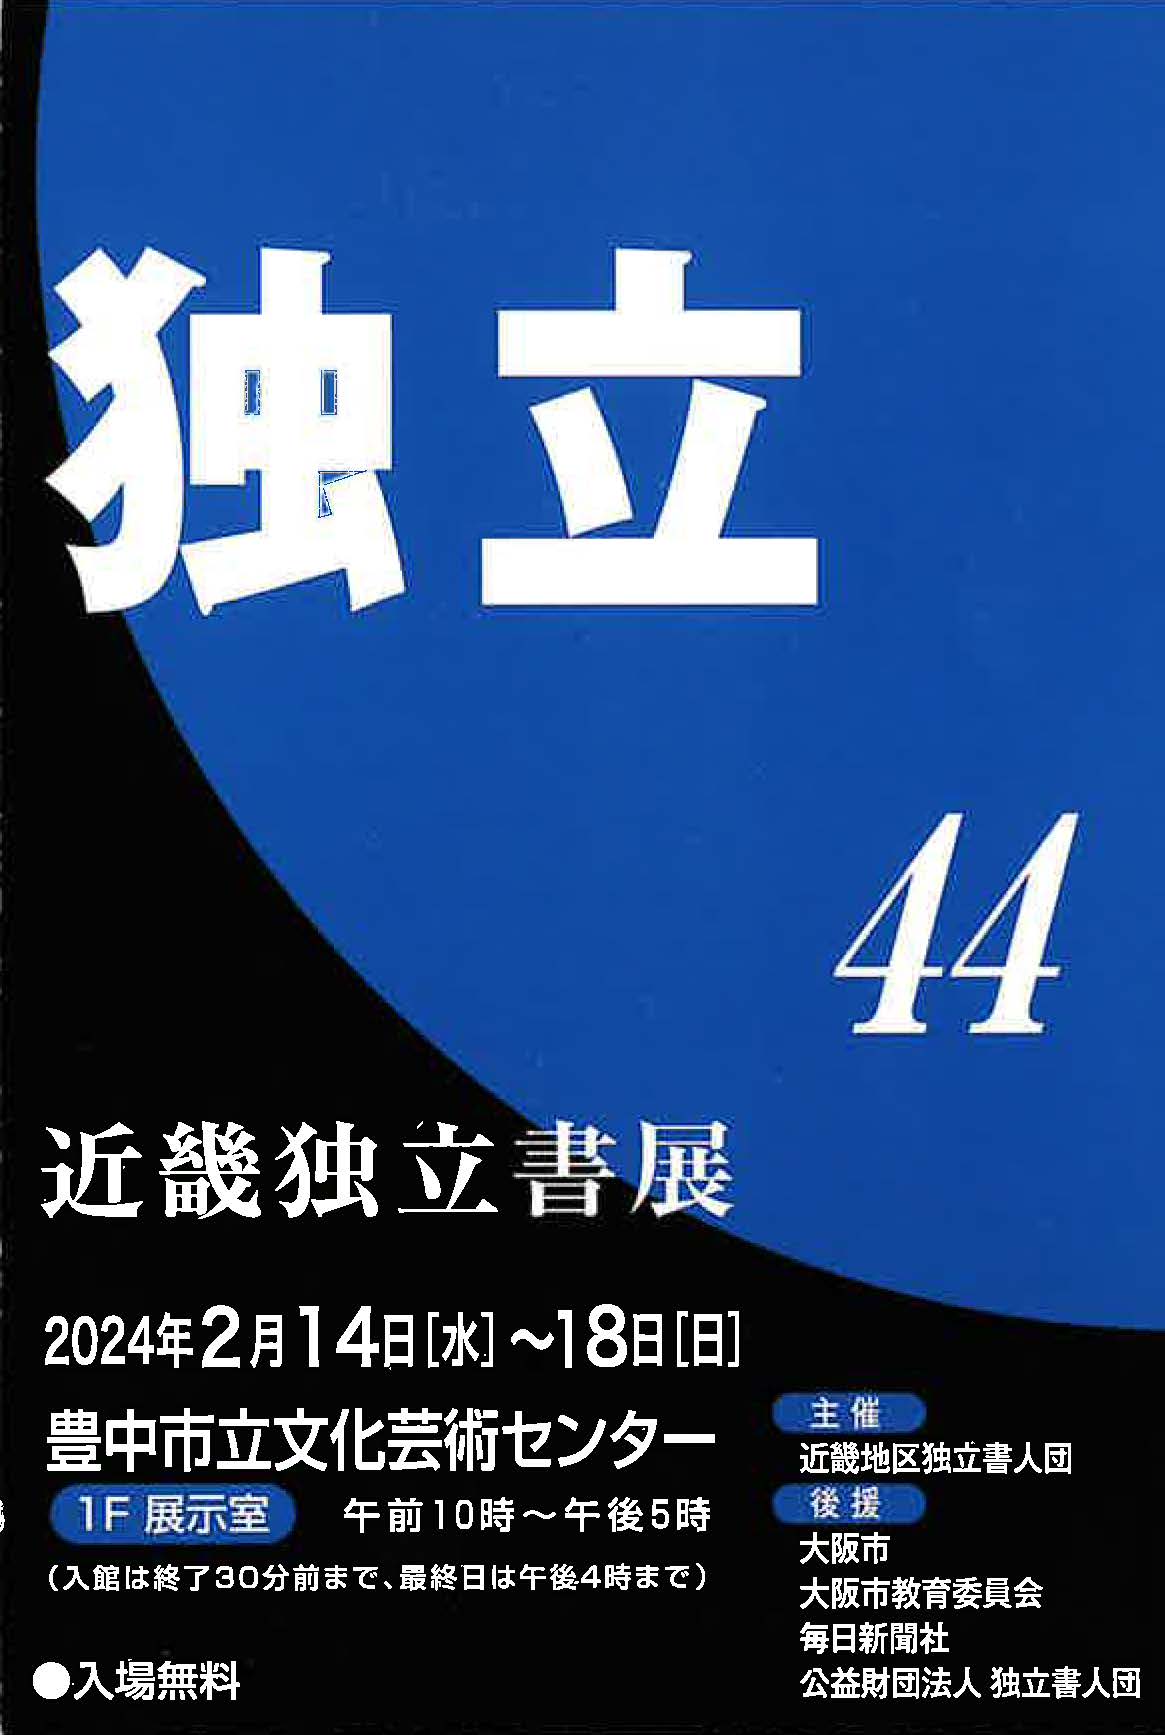 【展覧会情報】第44回 近畿独立書展